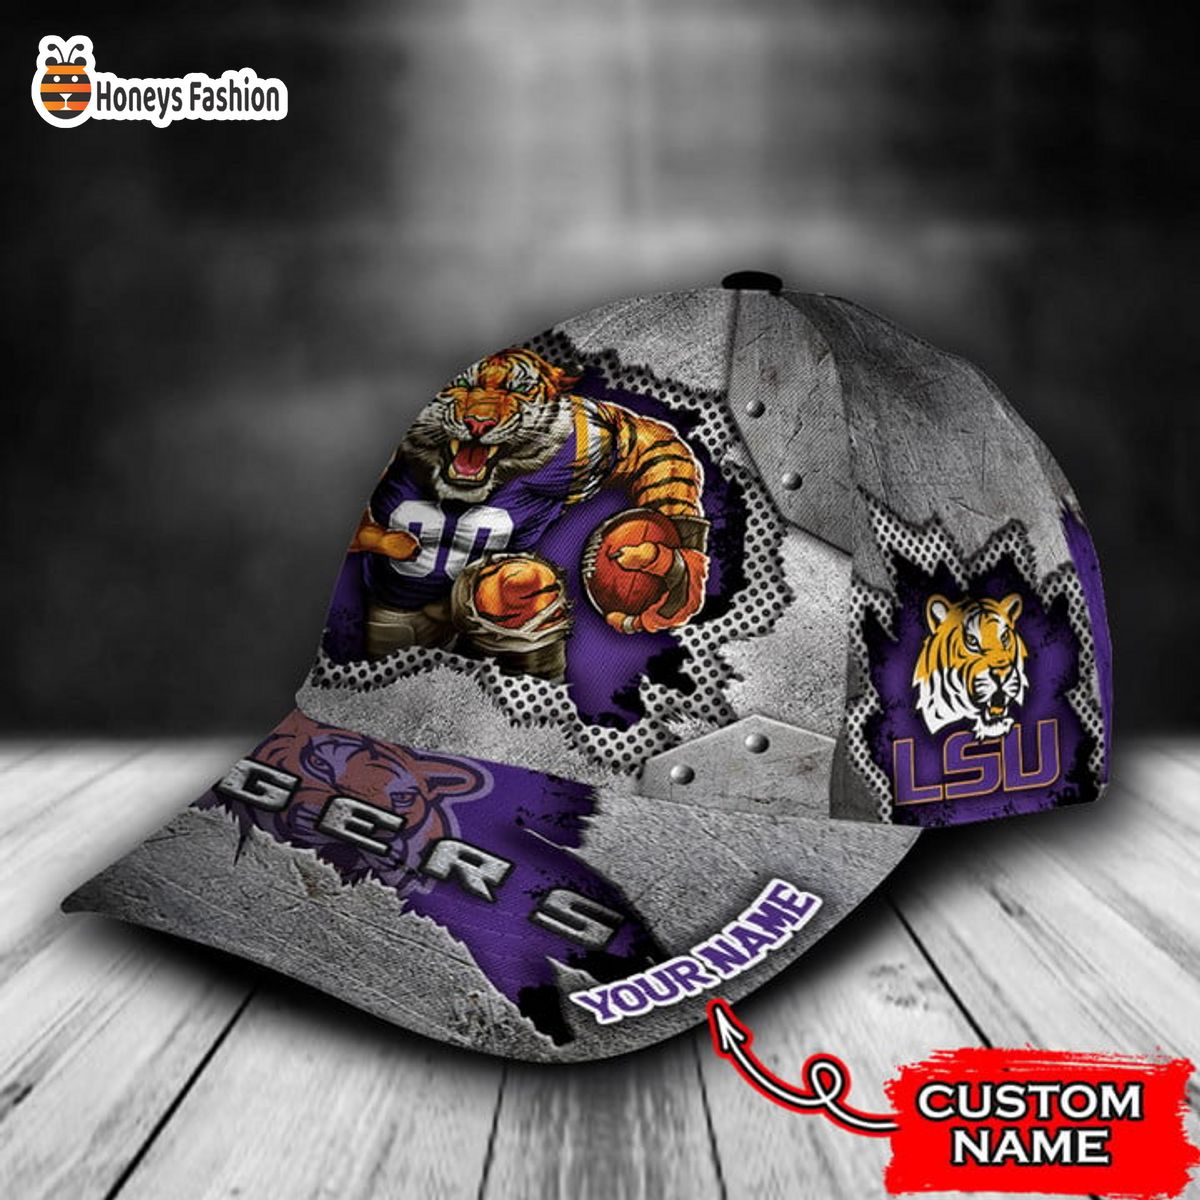 Lsu Tigers mascot custom name classic cap